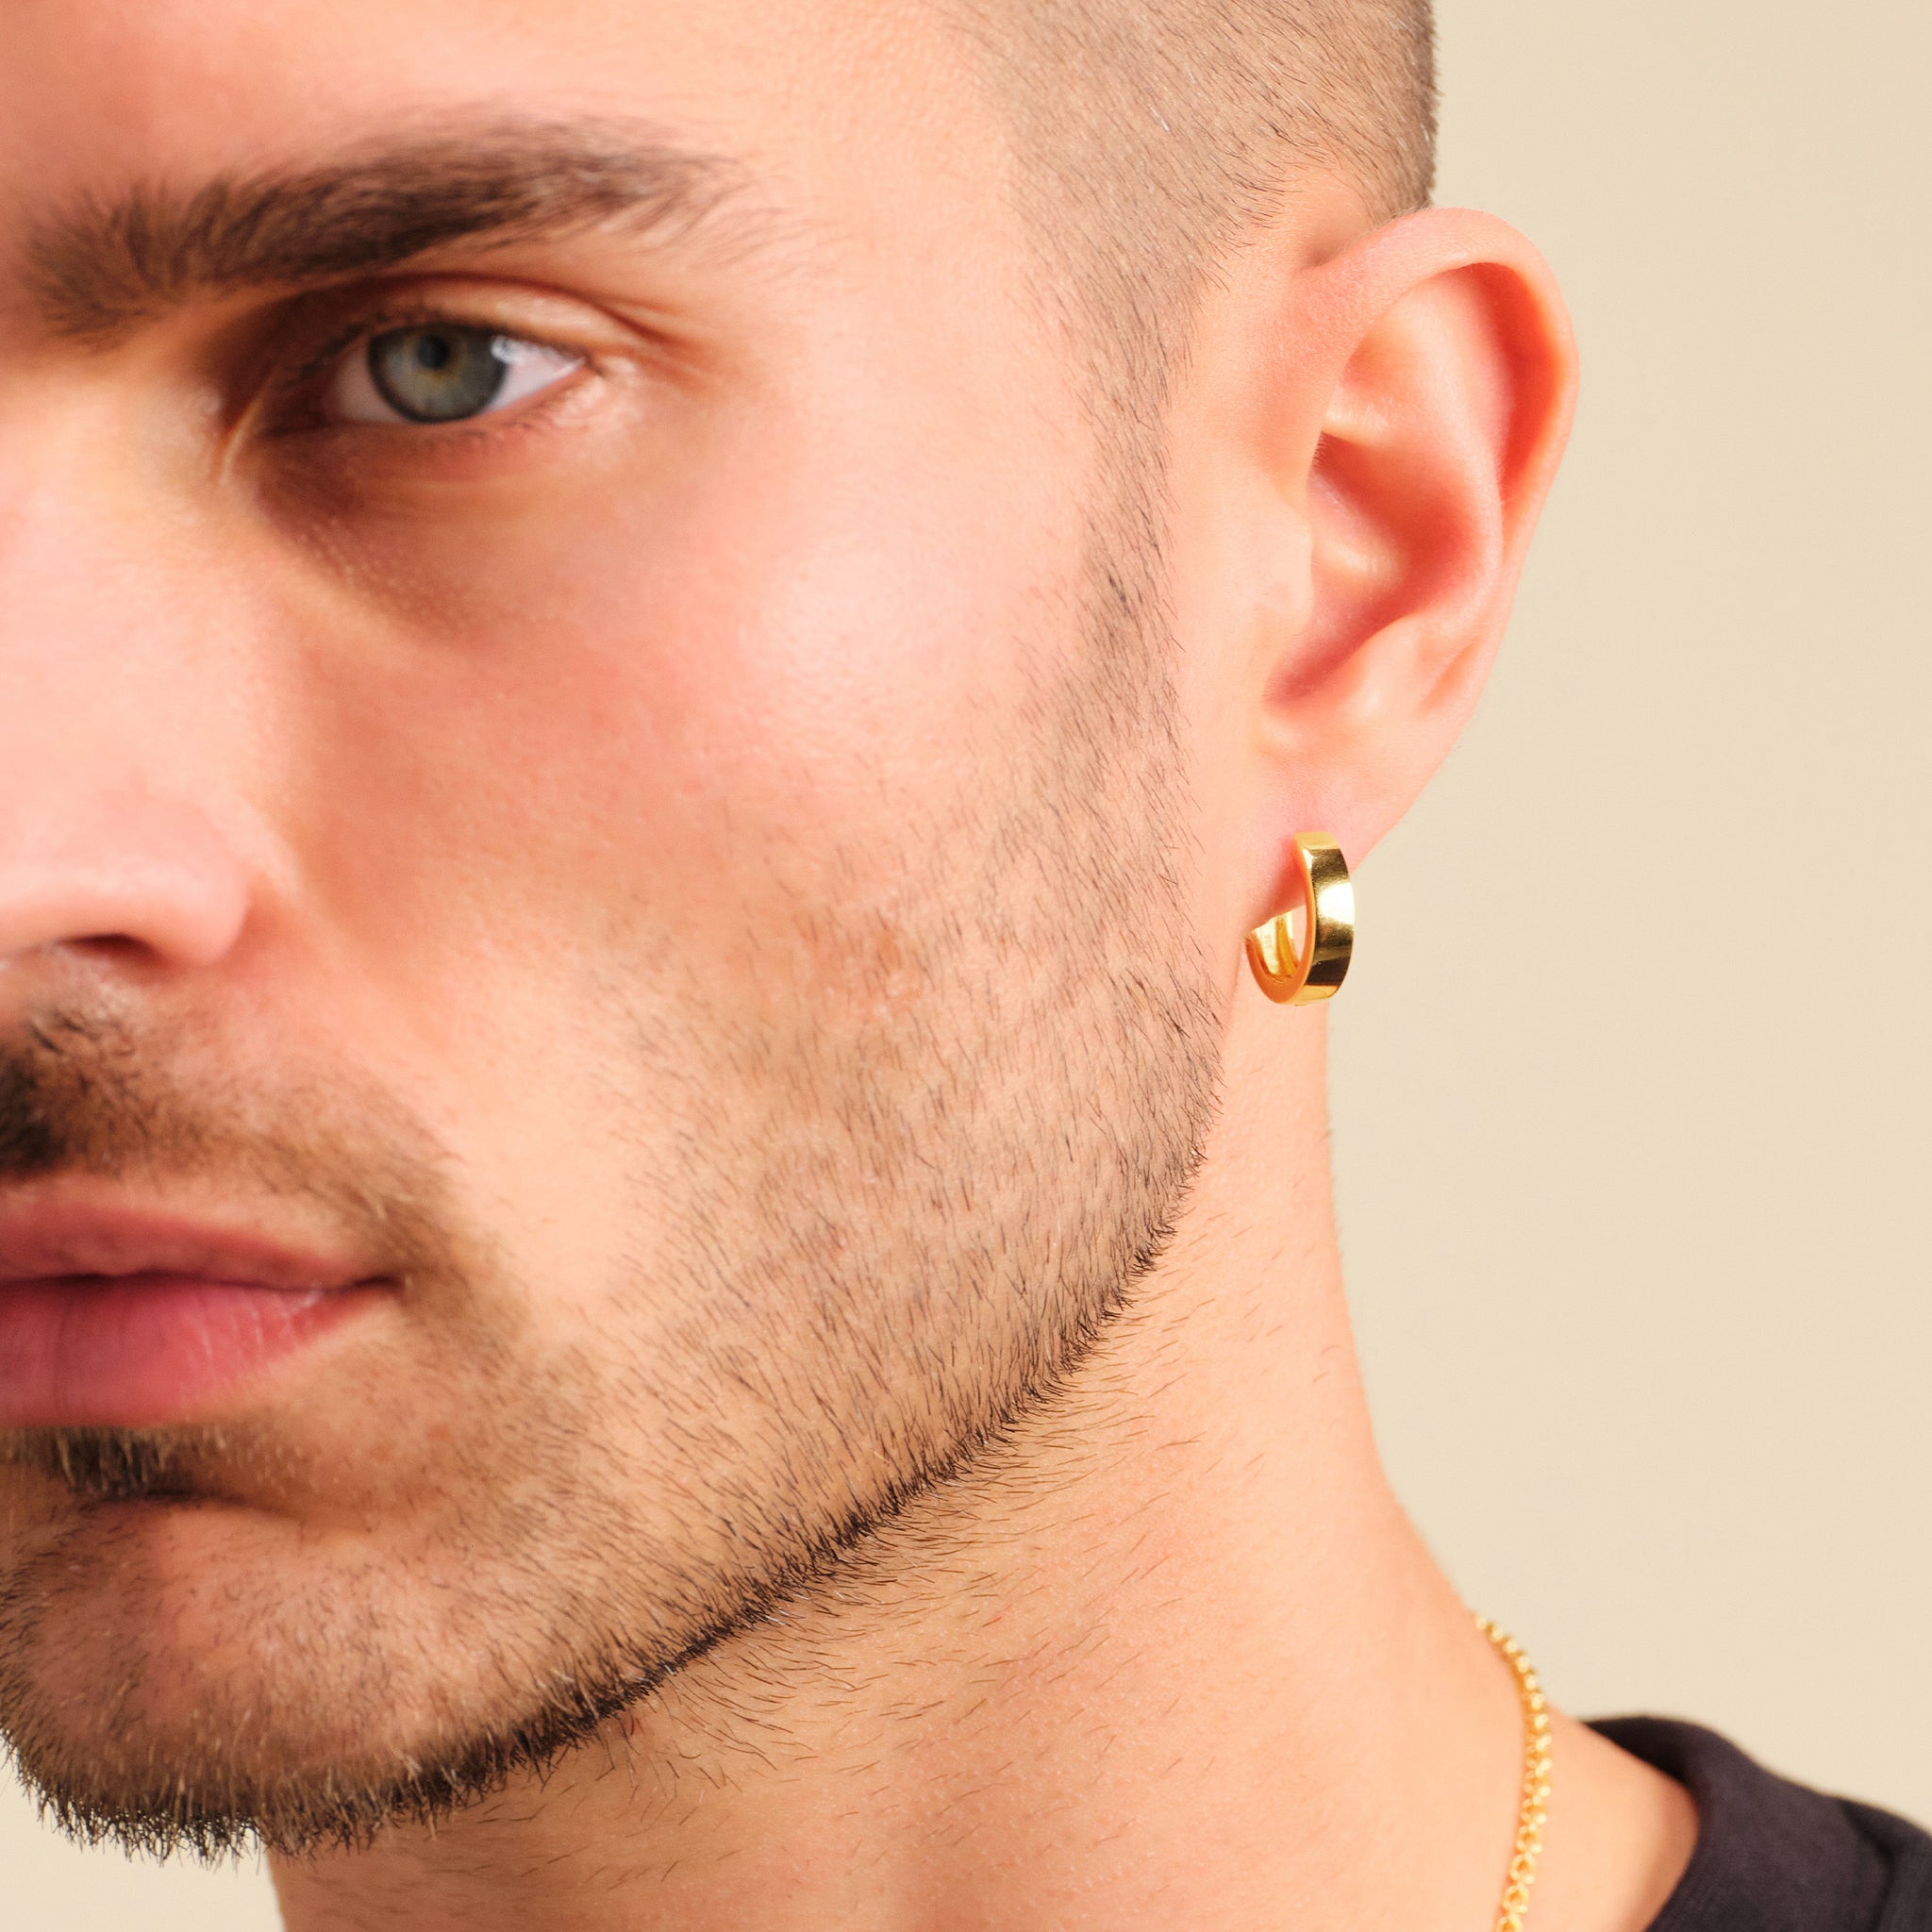 Cuban Link Earring - Men's Gold Hoop Earrings - JAXXON